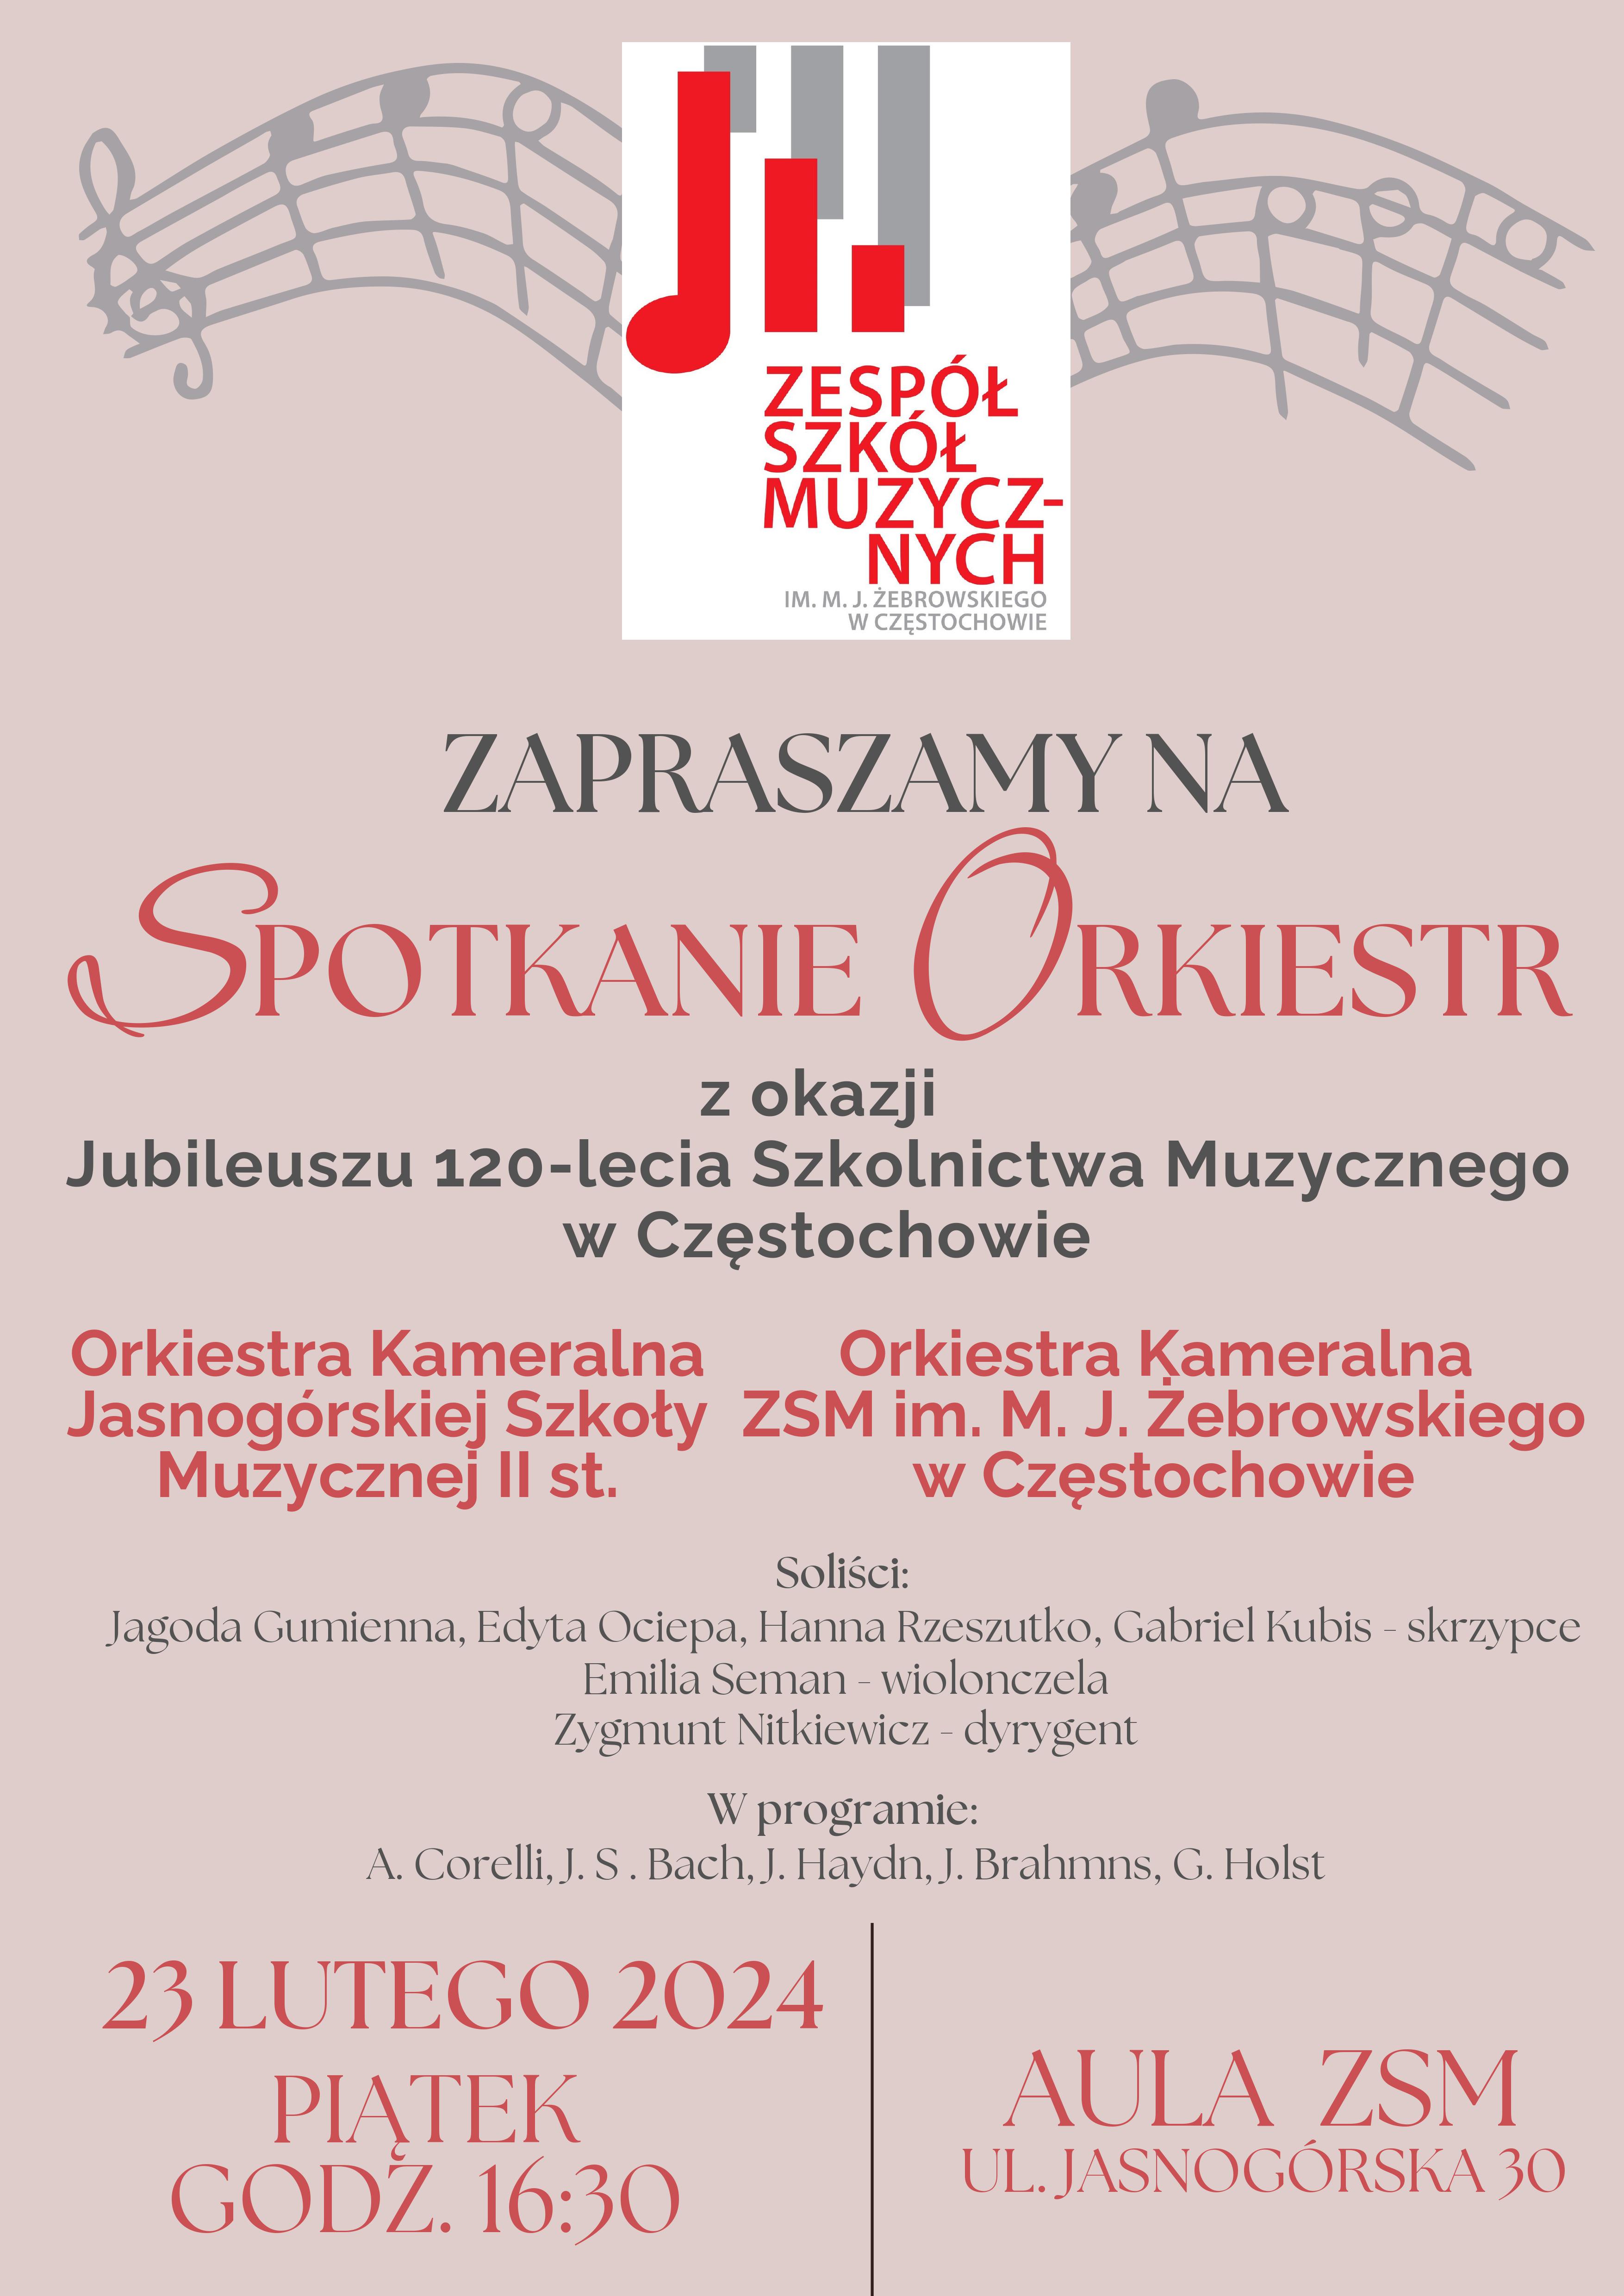 Beżowe tło, u góry logo szkoły, informacje dotyczące koncertu orkiestry Kameralnej ZSM i JOSM, 23 lutego 2024 o godz. 16.30 w auli ZSM